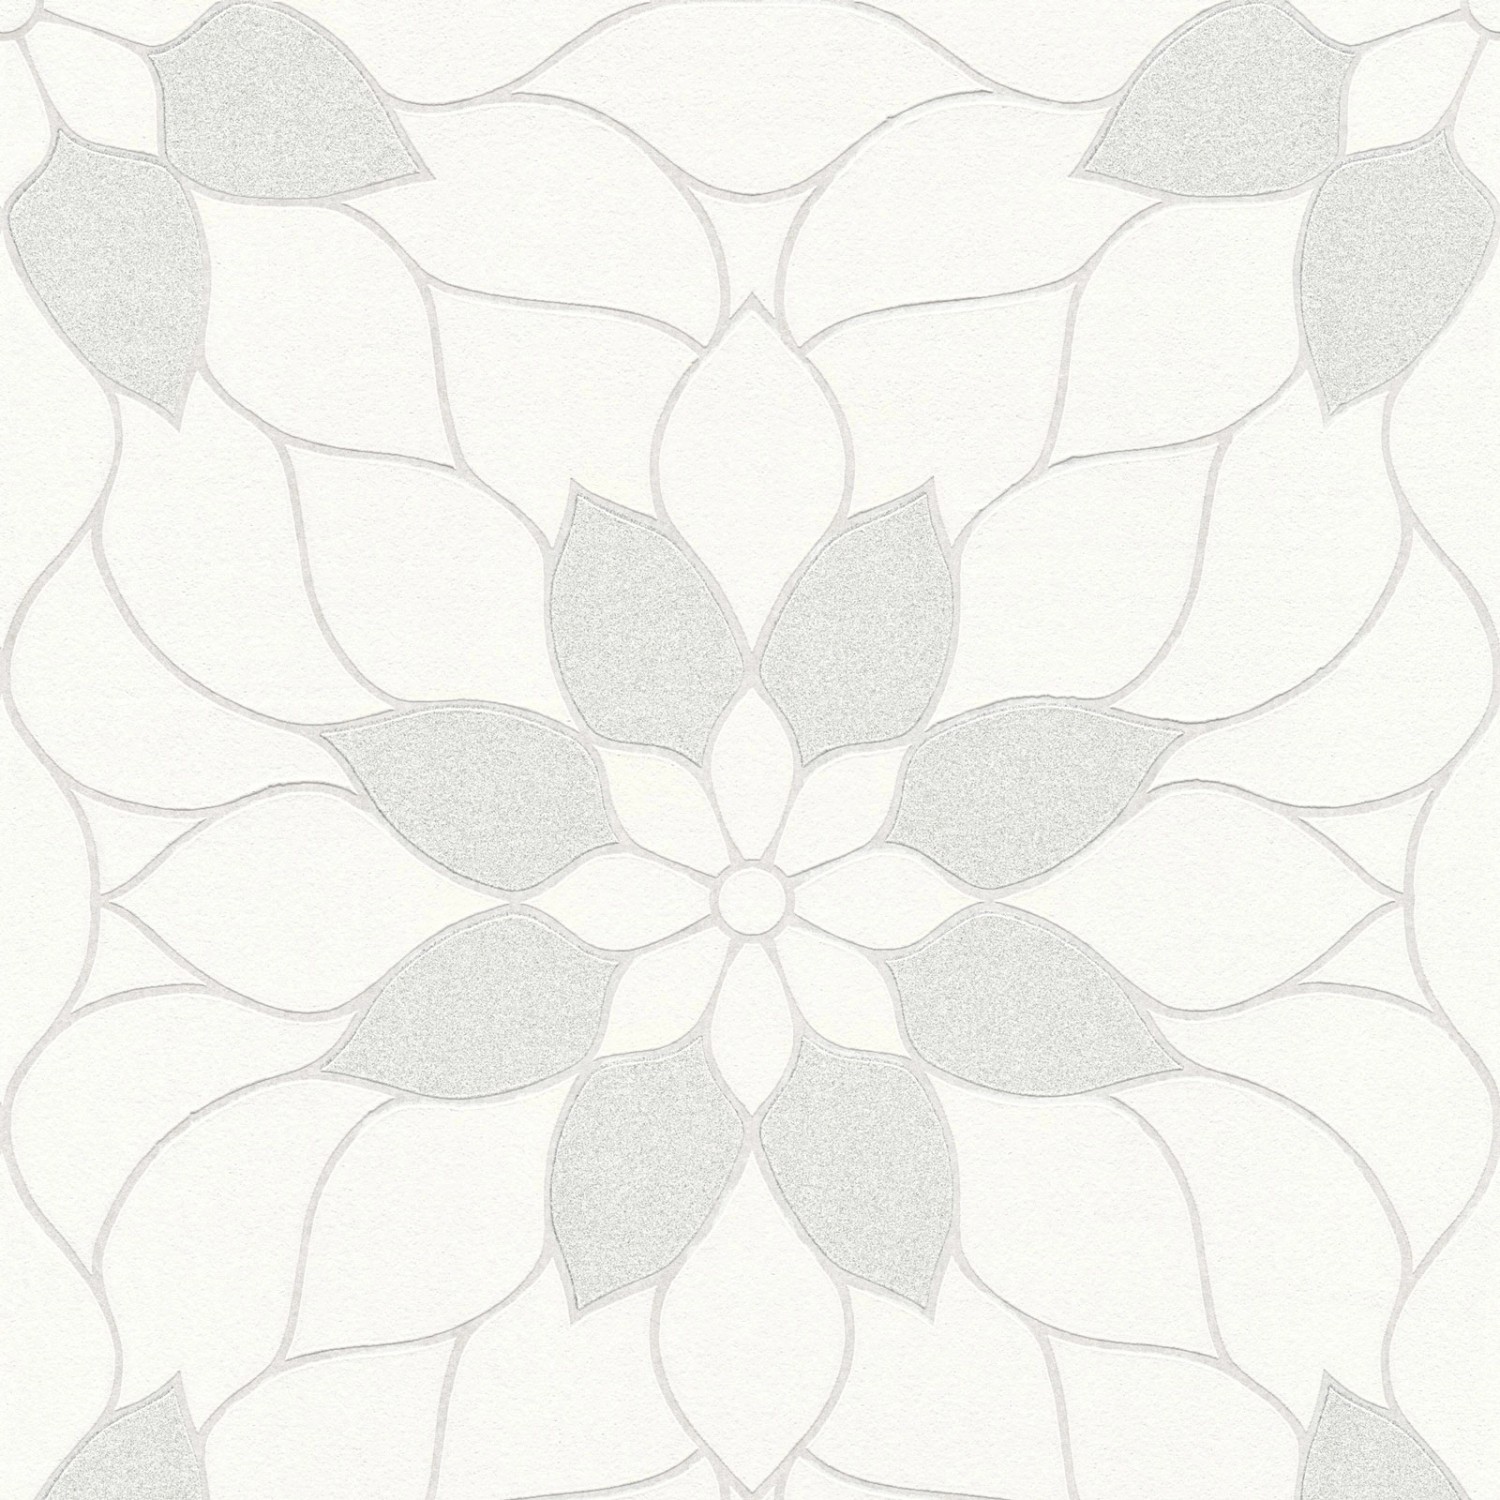 Bricoflor Mosaik Tapete Floral Moderne Vlies Mustertapete Weiß Grau mit Silber Glitzer Effekt Blumen Vliestapete Ideal für Badezimmer und Schlafzimmer von Bricoflor